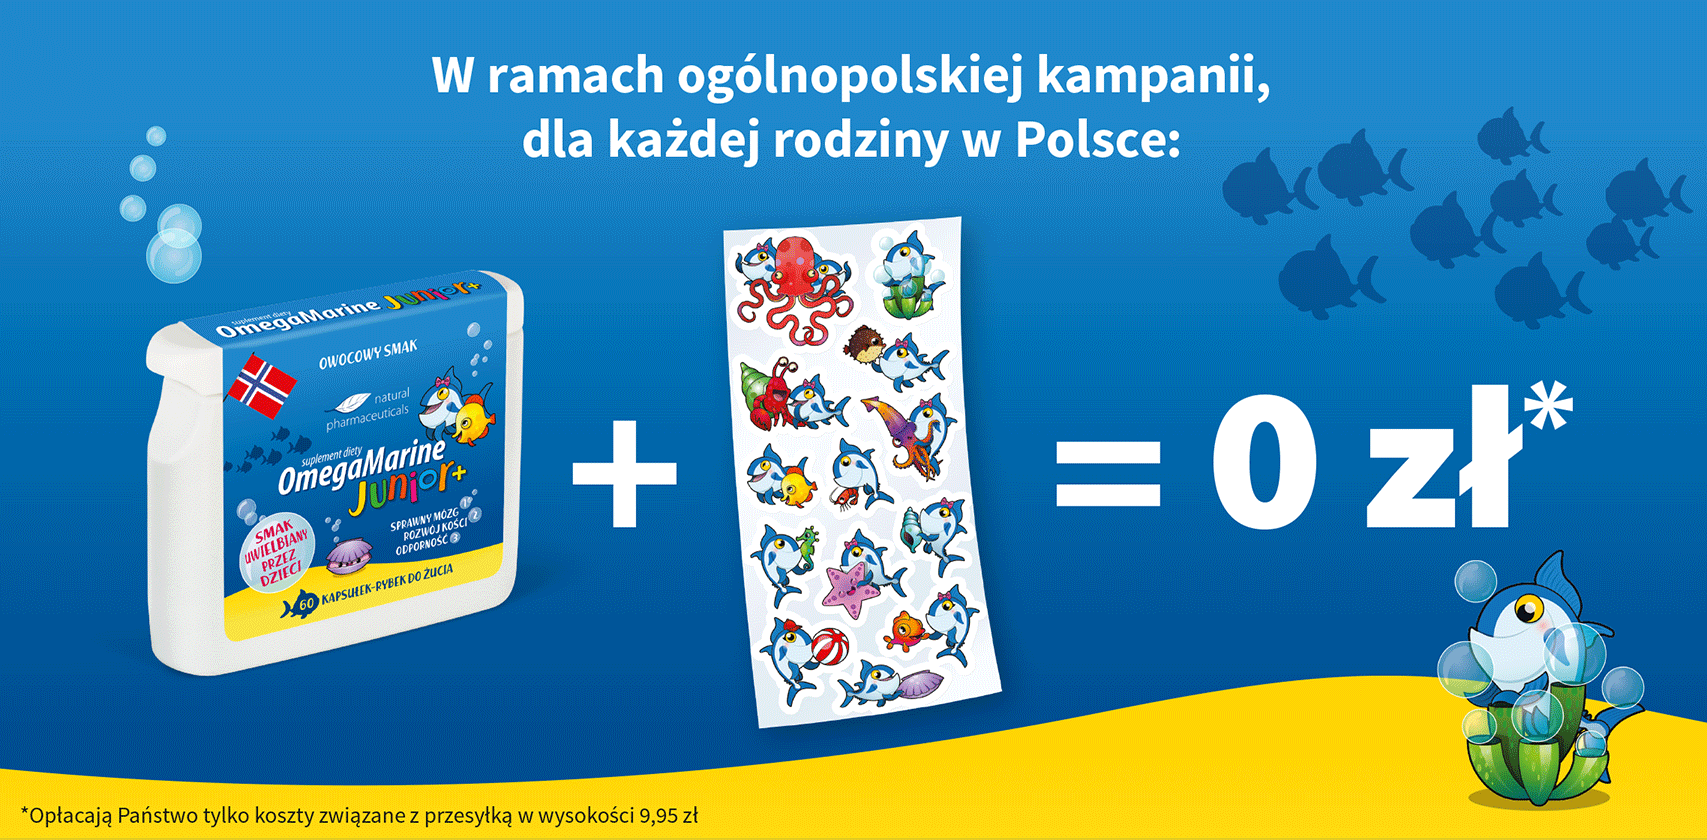 W ramach ogólnopolskiej kampanii organizowanej przez Natural Pharmaceuticals, dla każdej rodziny w Polsce: